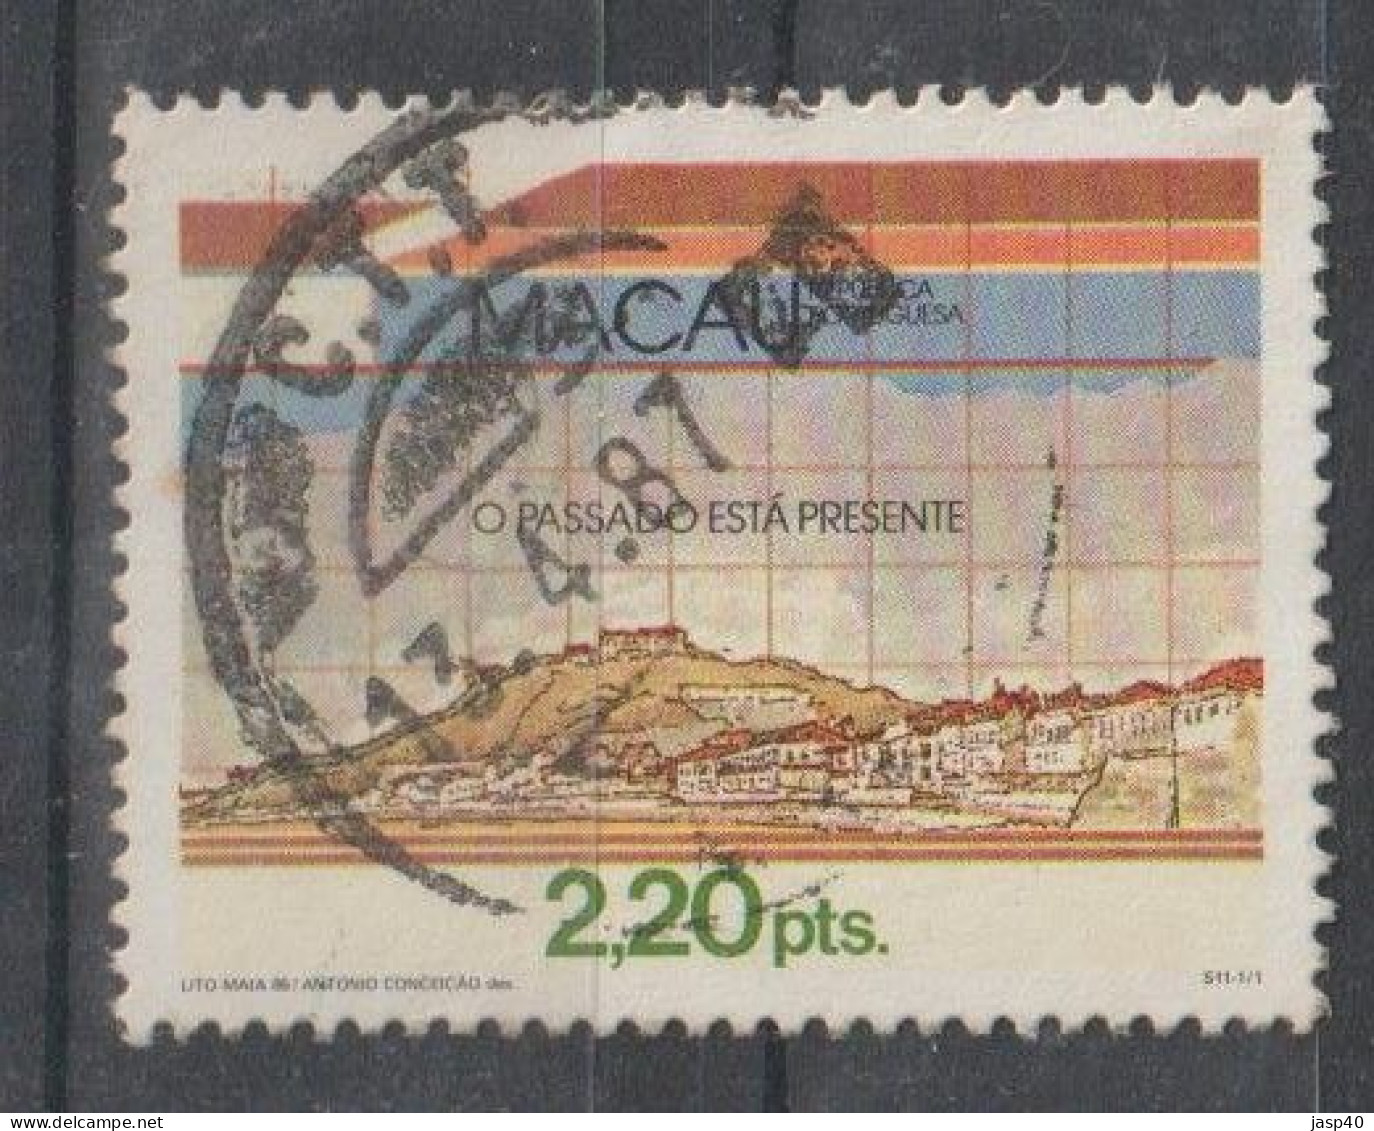 MACAU 525 - USADO - Used Stamps